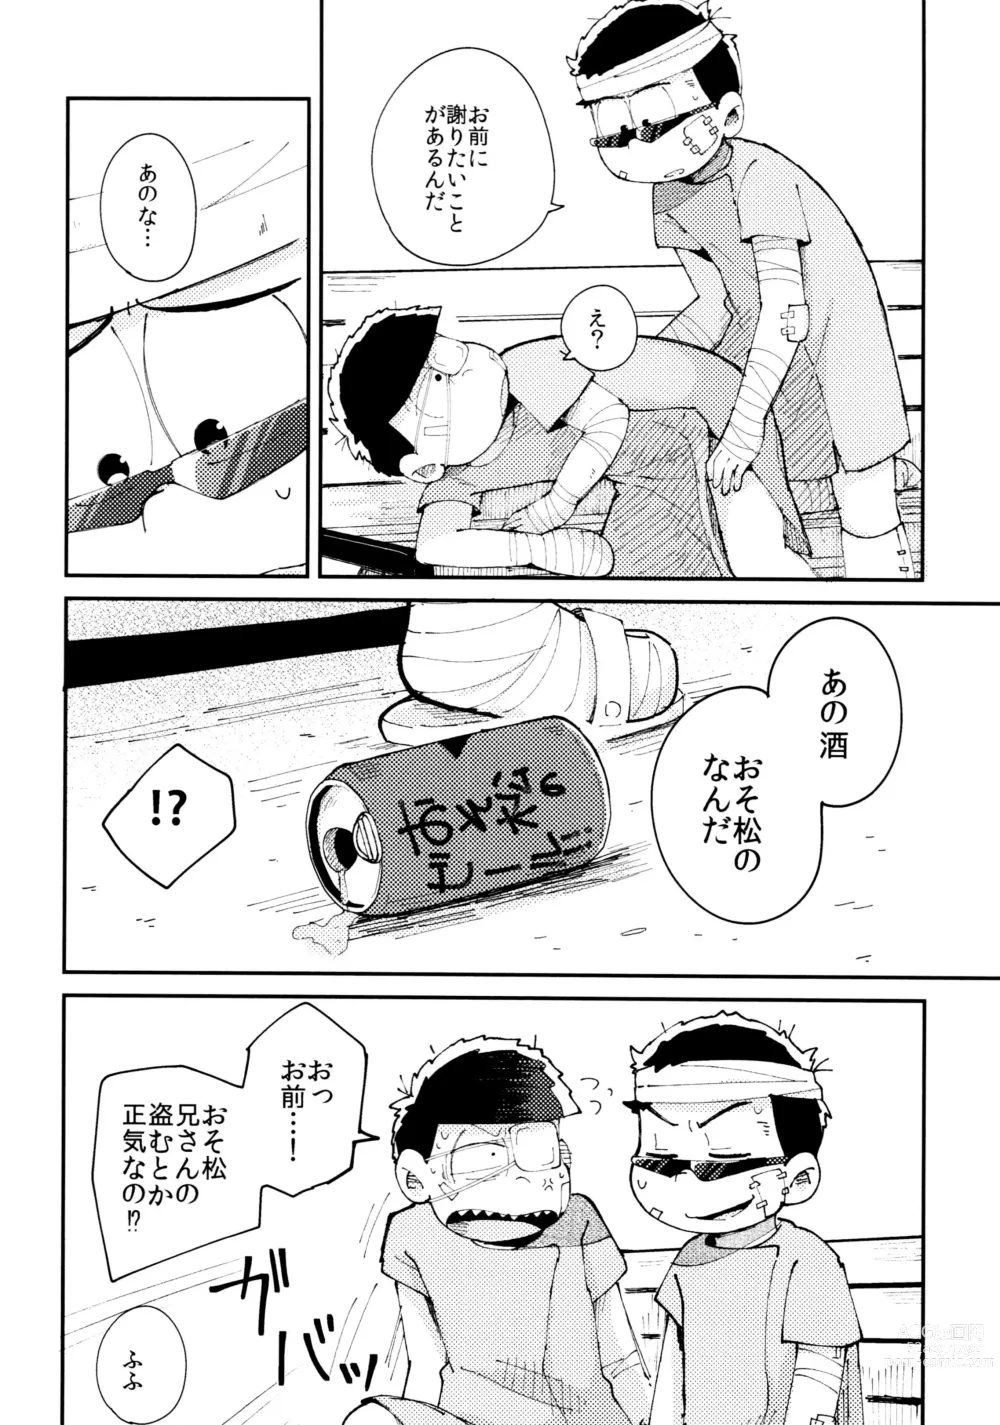 Page 266 of doujinshi Zenbu, Osake no Sei ni Shite!